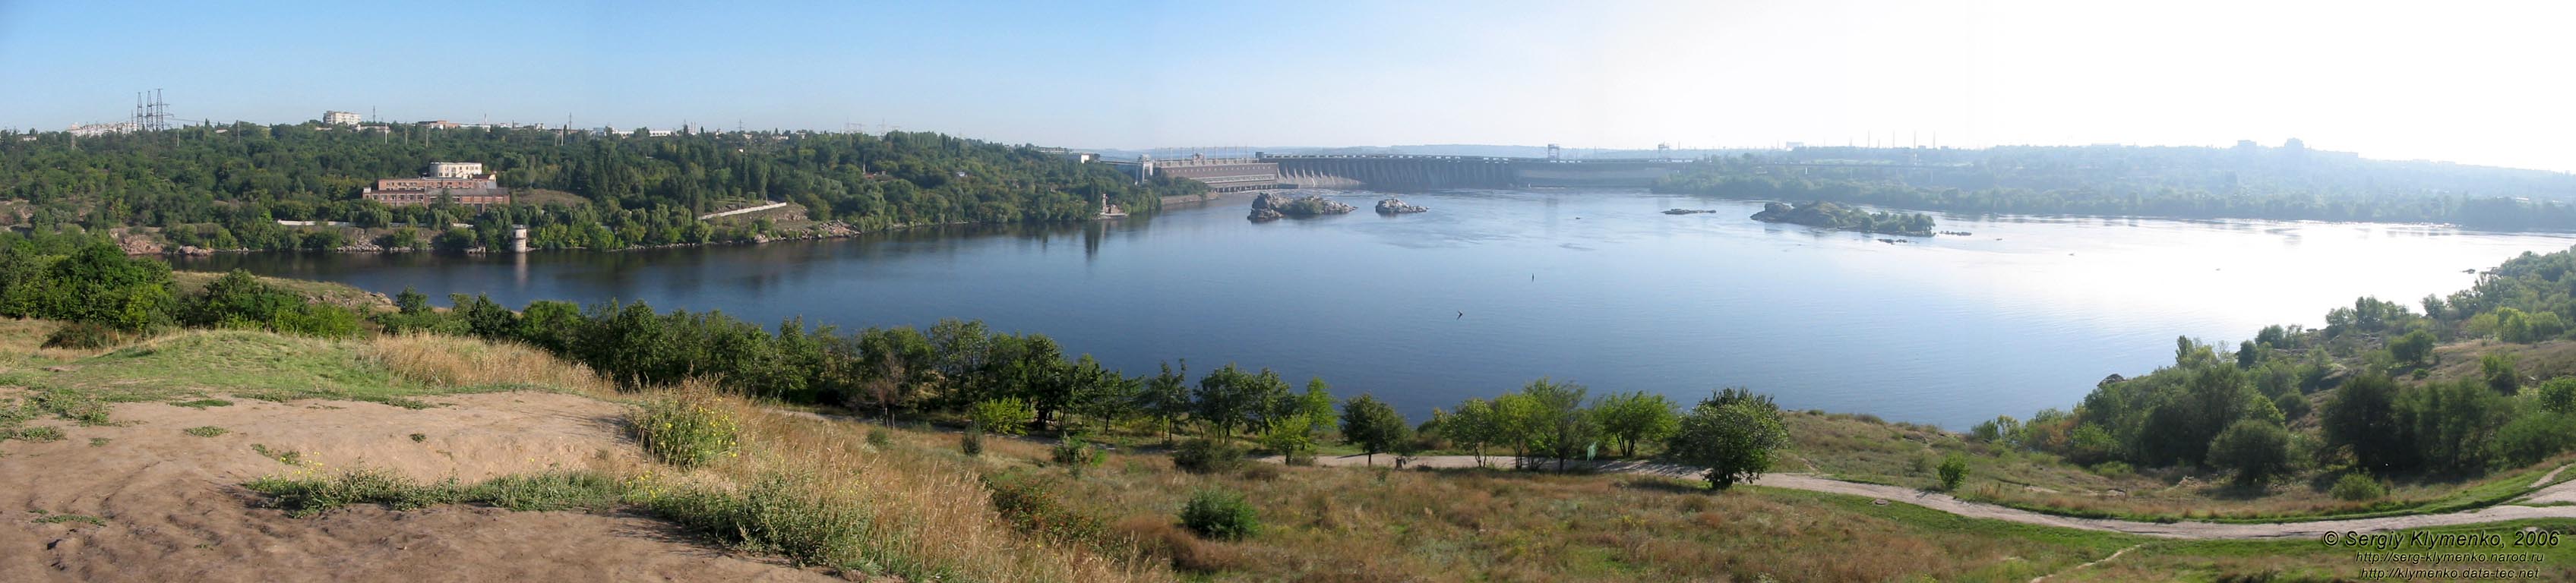 Вид с наивысшей точки Хортицы: днепровские пороги на фоне плотины ДнепроГЭС